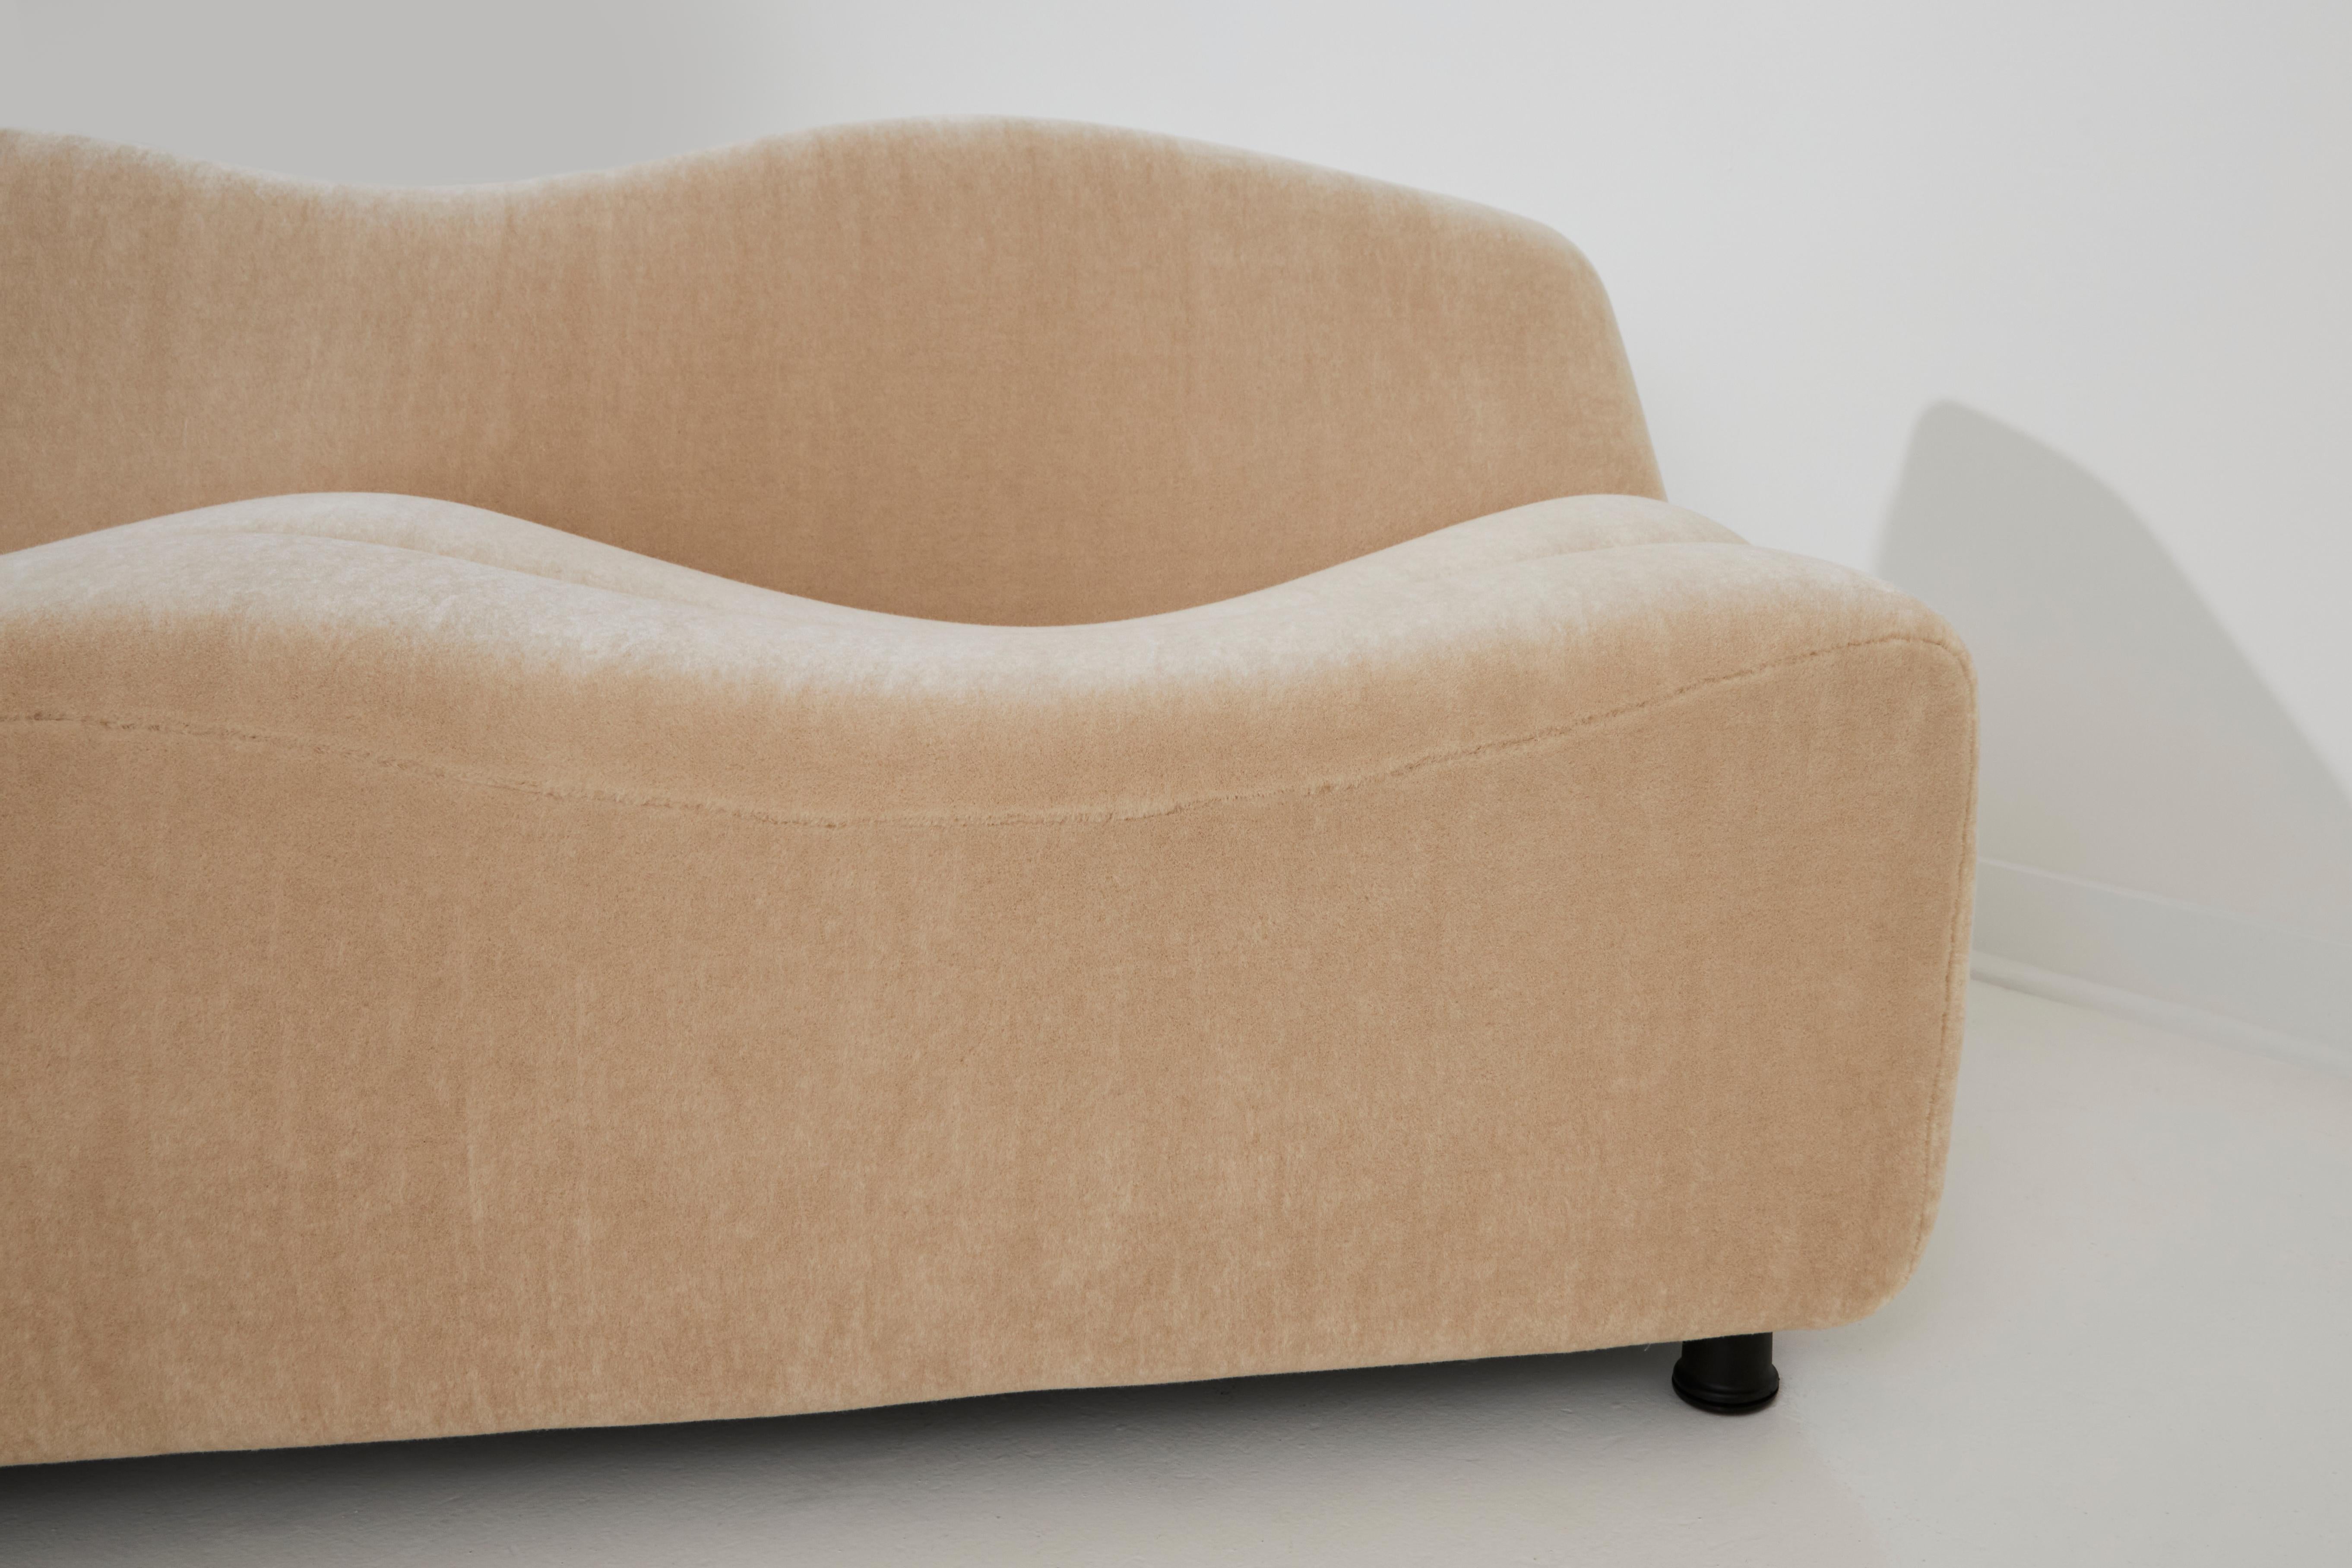 Le canapé ABCD, conçu par Pierre Paulin en 1968, témoigne de son esprit novateur et avant-gardiste. Ce canapé est vraiment unique, caractérisé par son design non conventionnel et très distinctif.

L'une de ses caractéristiques principales est sa